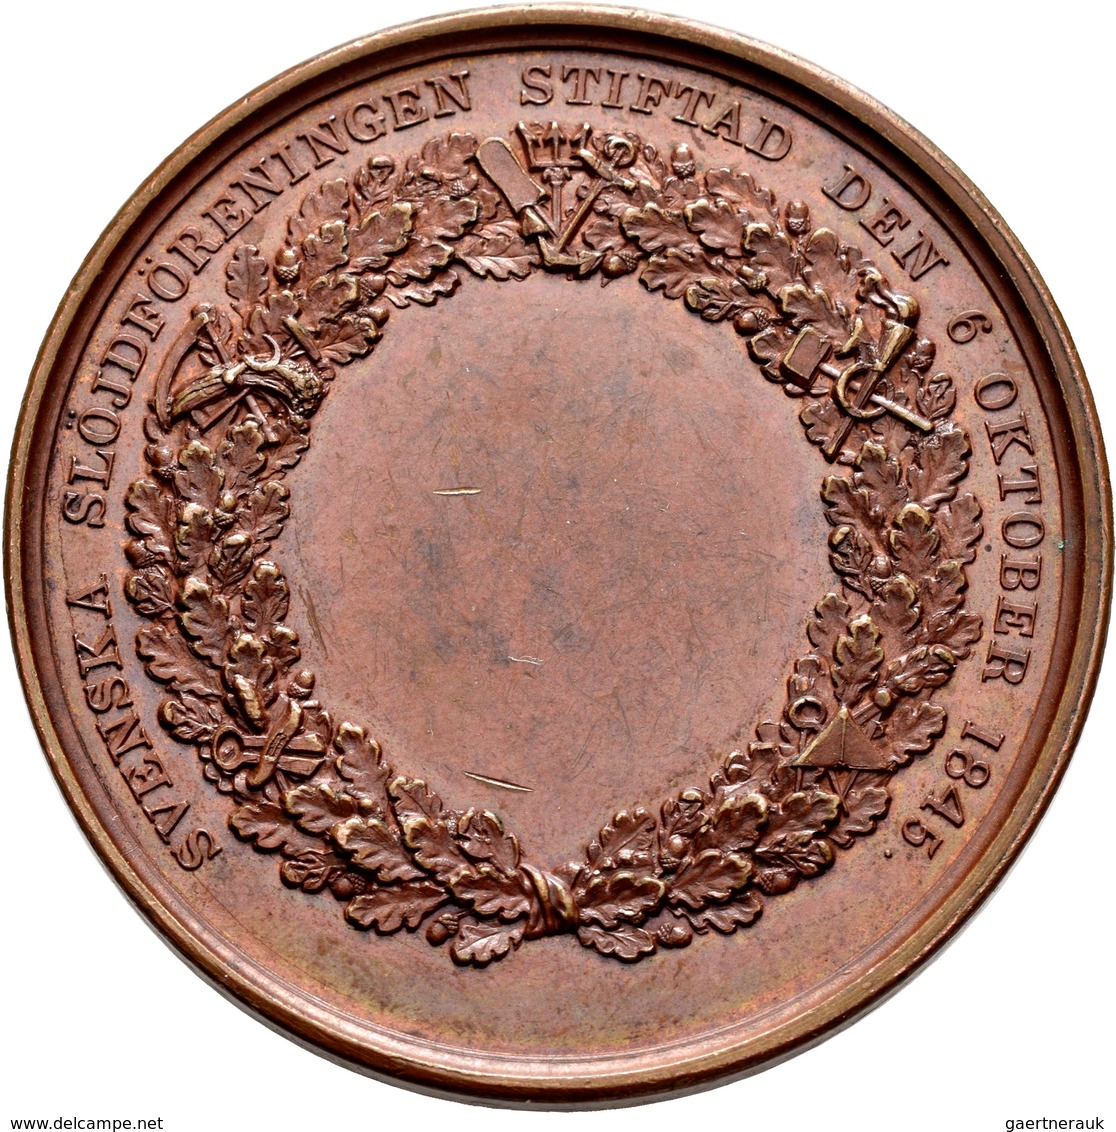 Schweden: Lot 25 schwedischer Medaillen in Silber und Bronze, u. a. Bronzene Prämienmedaille 1845, v